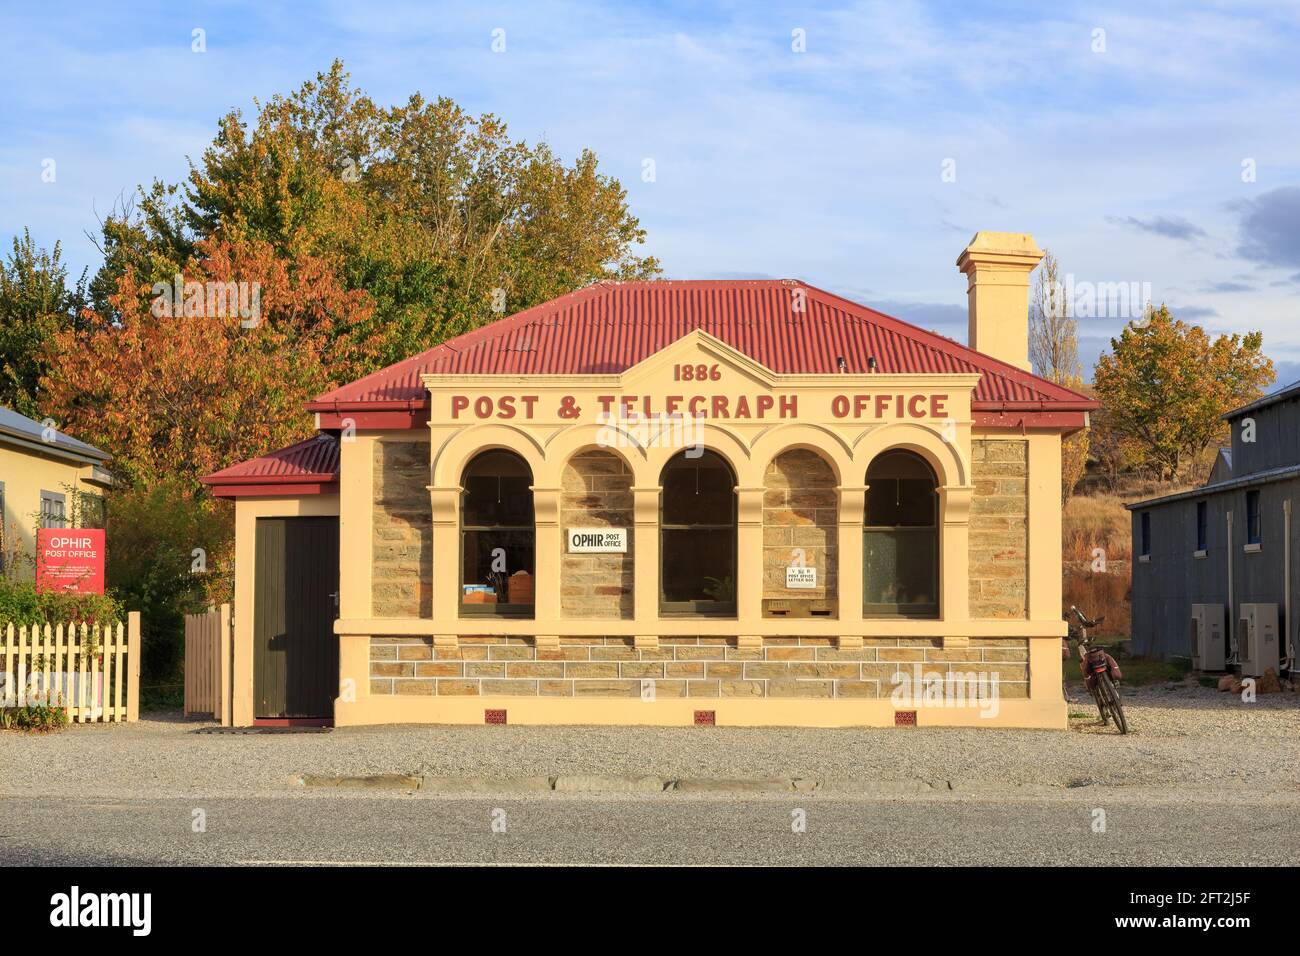 L'ancien bureau de poste et de télégraphe (1886), l'un des nombreux bâtiments historiques de la petite ville d'Ophir, en Nouvelle-Zélande Banque D'Images